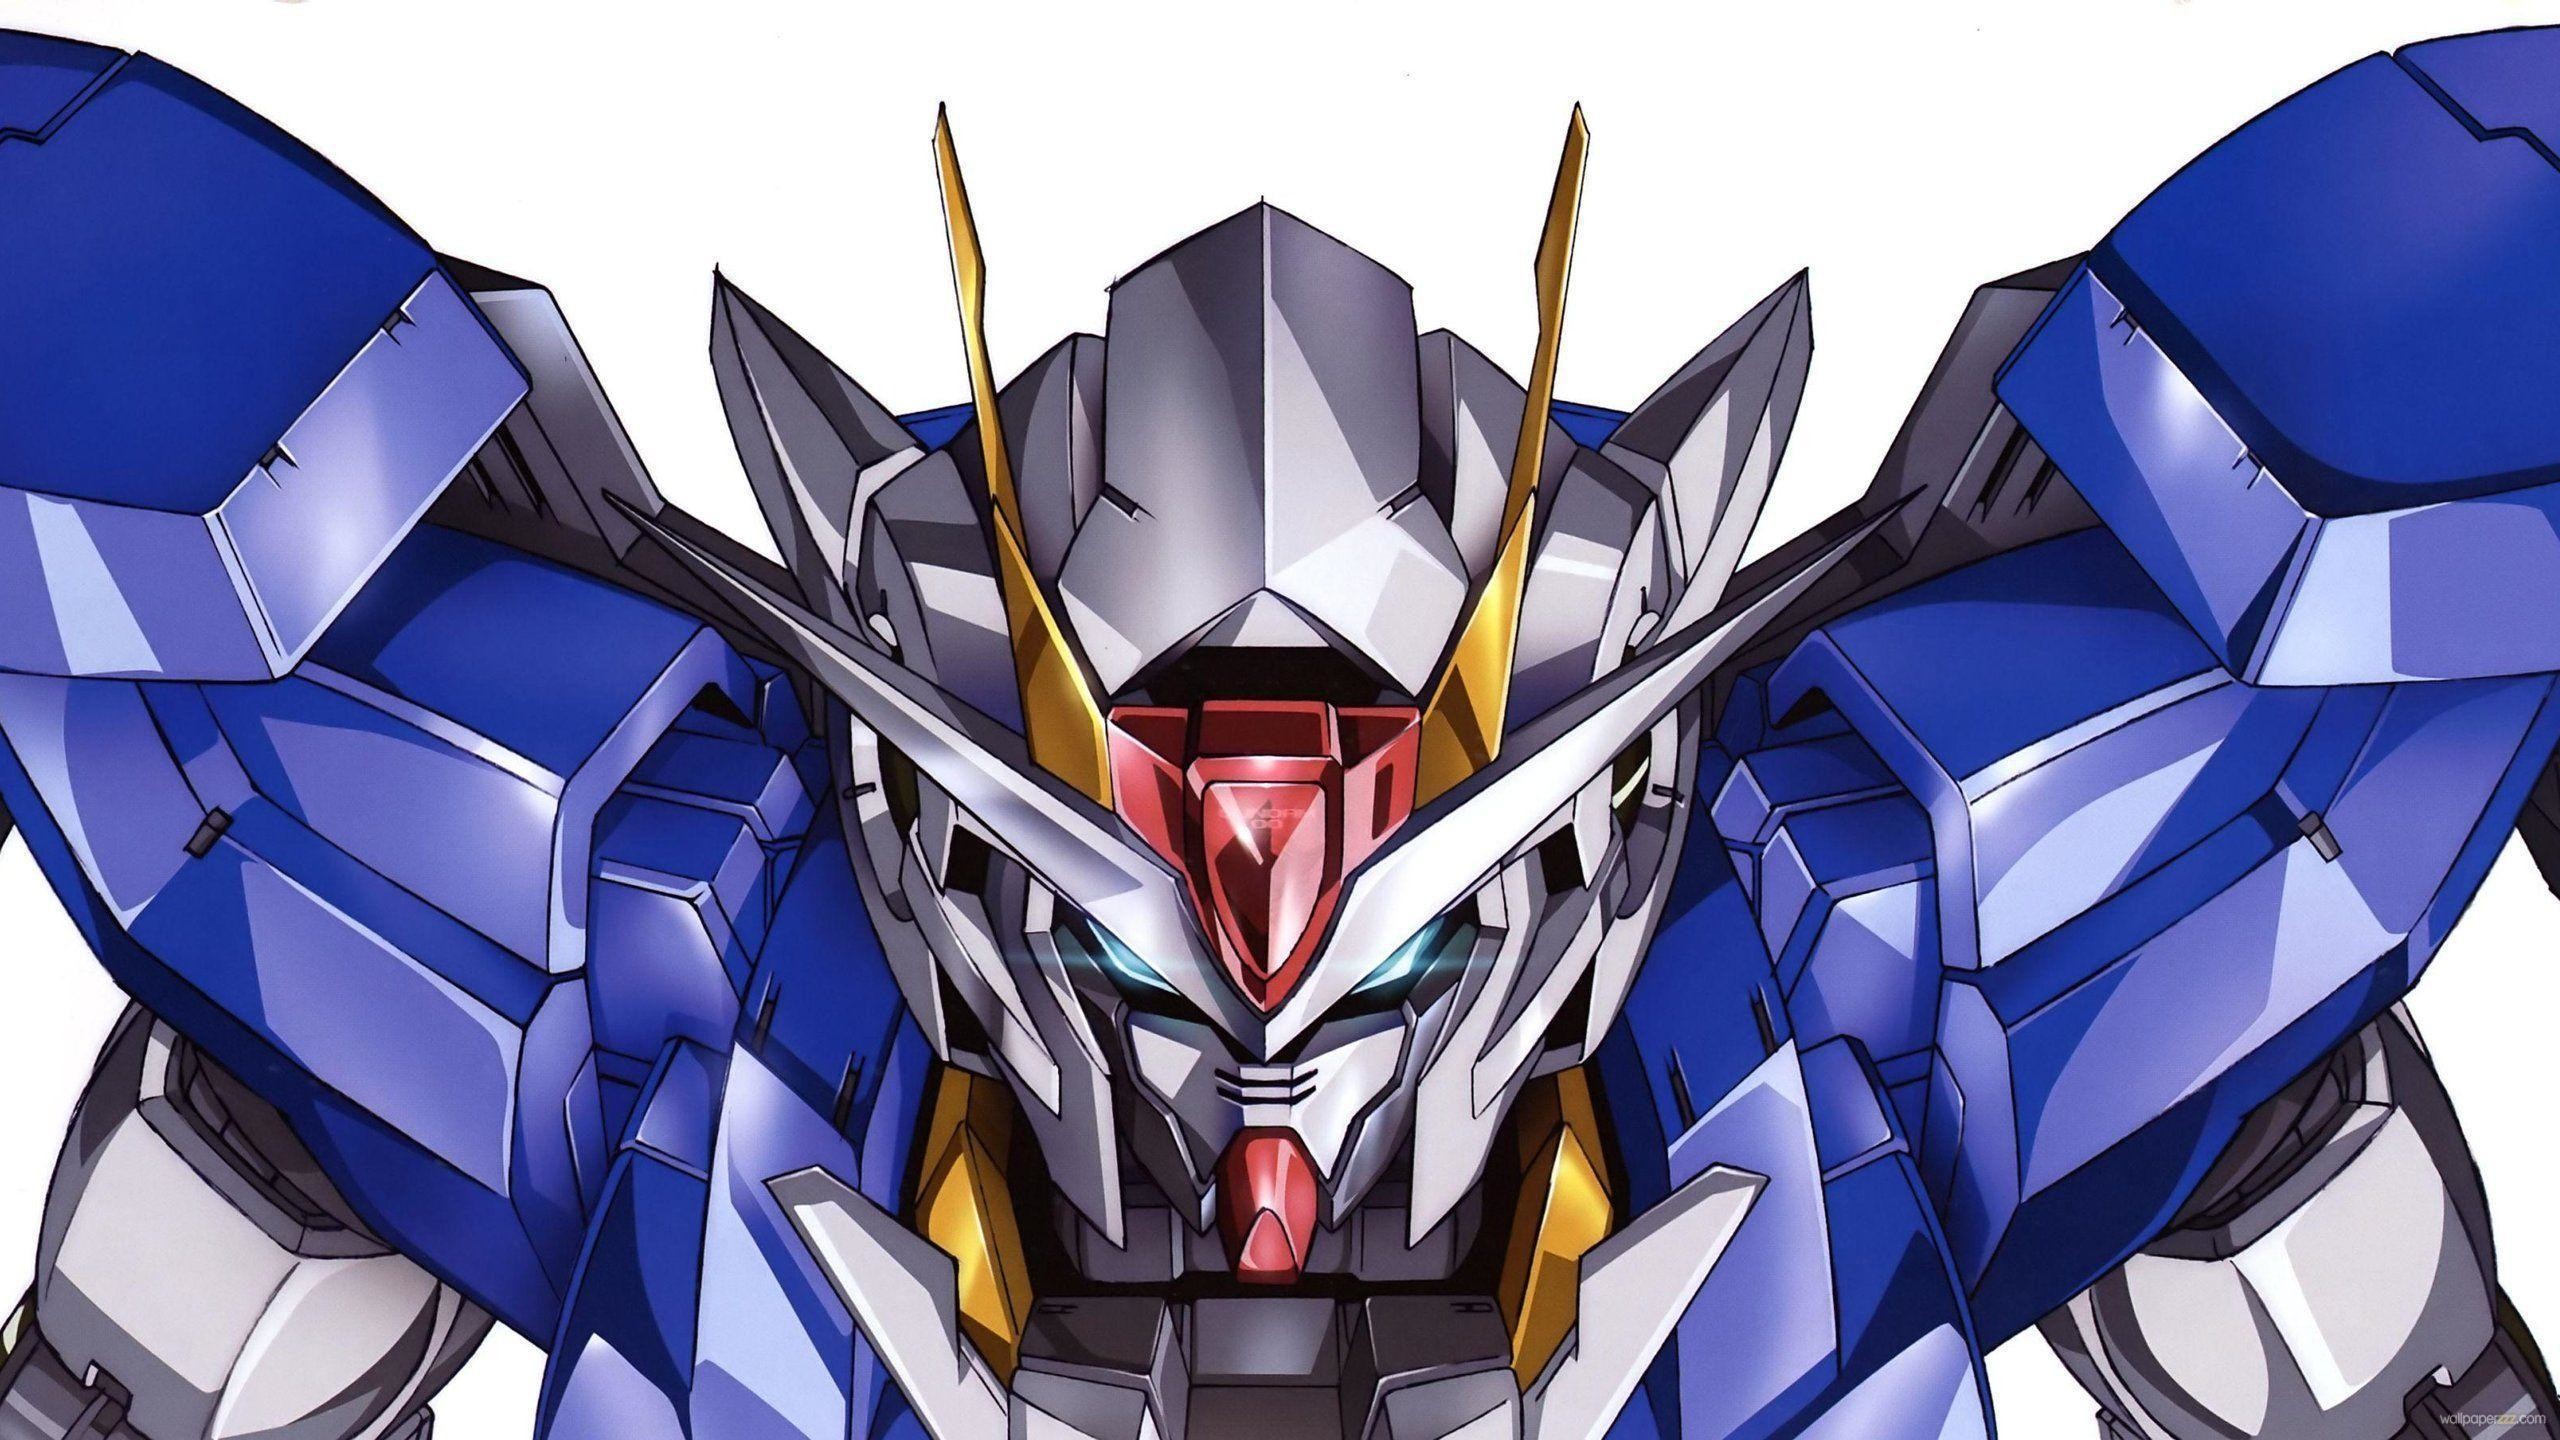 2560x1440 Gundam Poster Anime Wallpaper HD 981 #3908 Wallpaper | High .